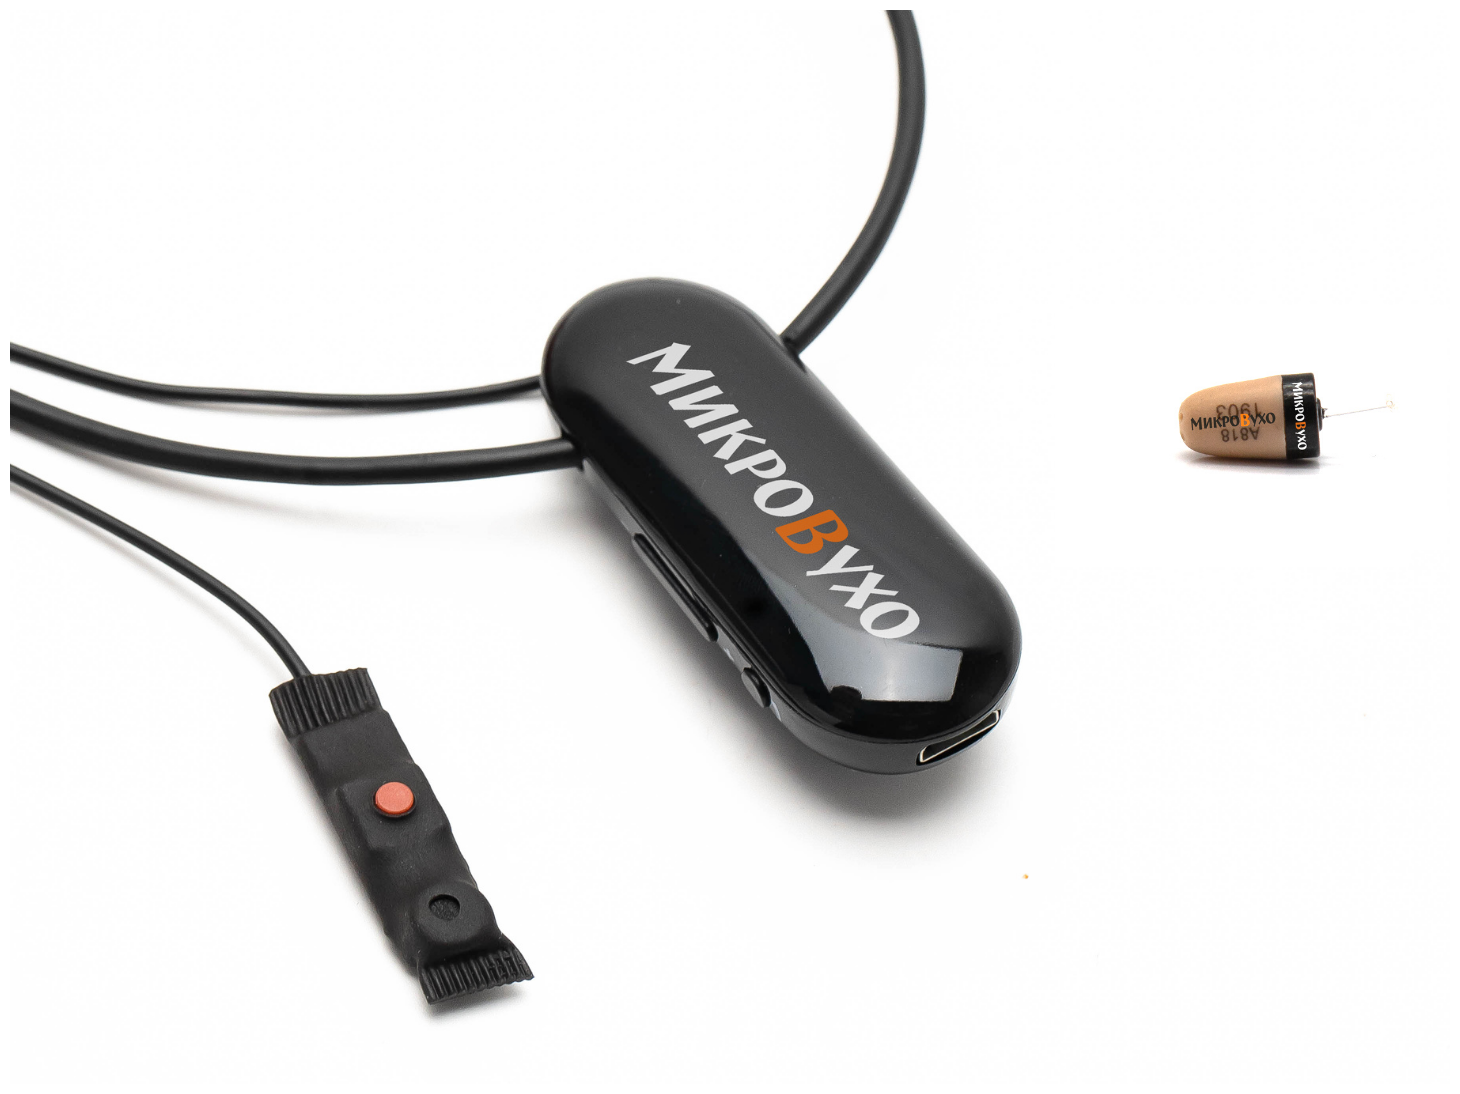 Капсульный микронаушник К5 4 мм и гарнитура Bluetooth PRO с выносным микрофоном, кнопкой подачи сигнала, кнопкой ответа и перезвона